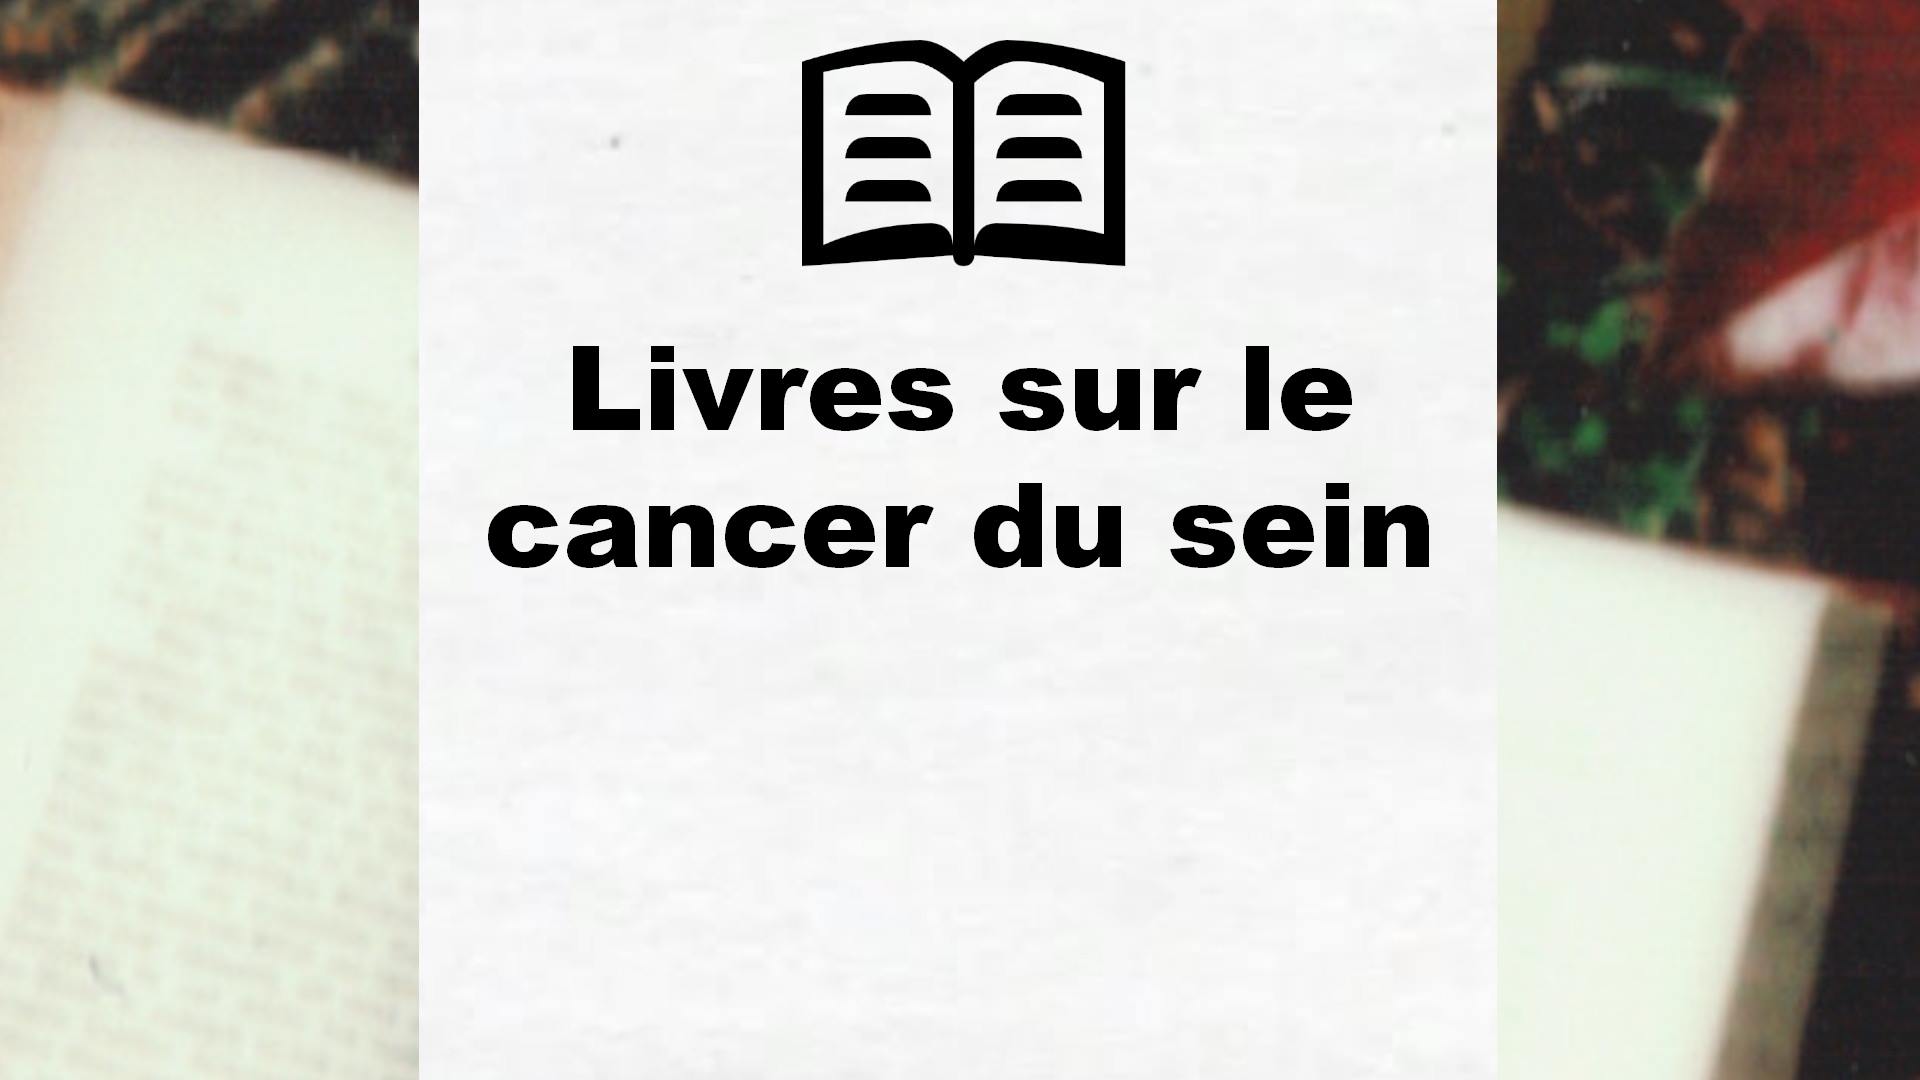 Livres sur le cancer du sein